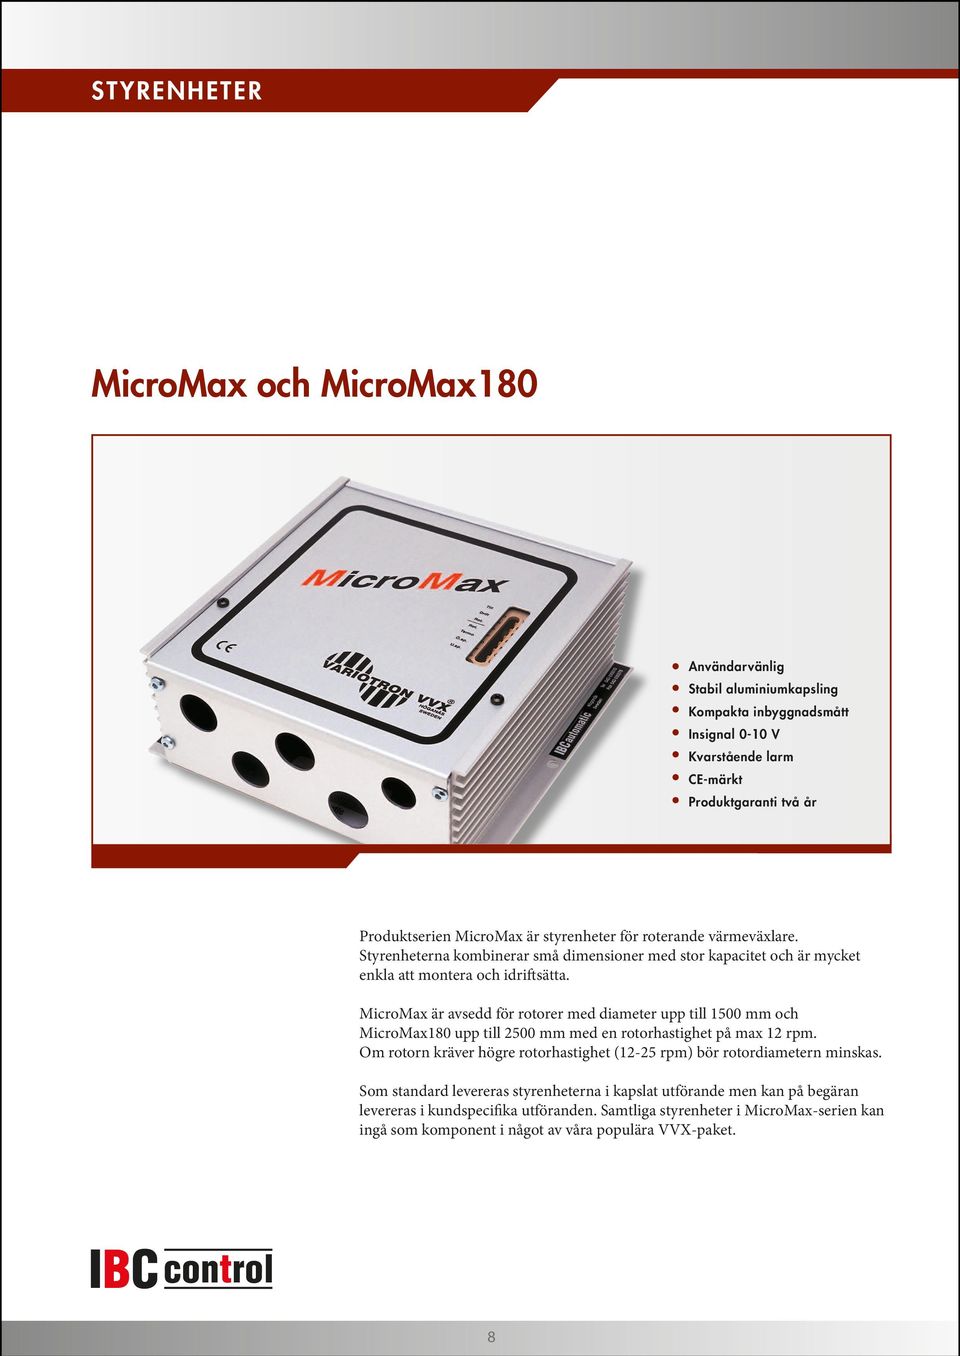 MicroMax är avsedd för rotorer med diameter upp till 1500 mm och MicroMax180 upp till 2500 mm med en rotorhastighet på max 12 rpm.